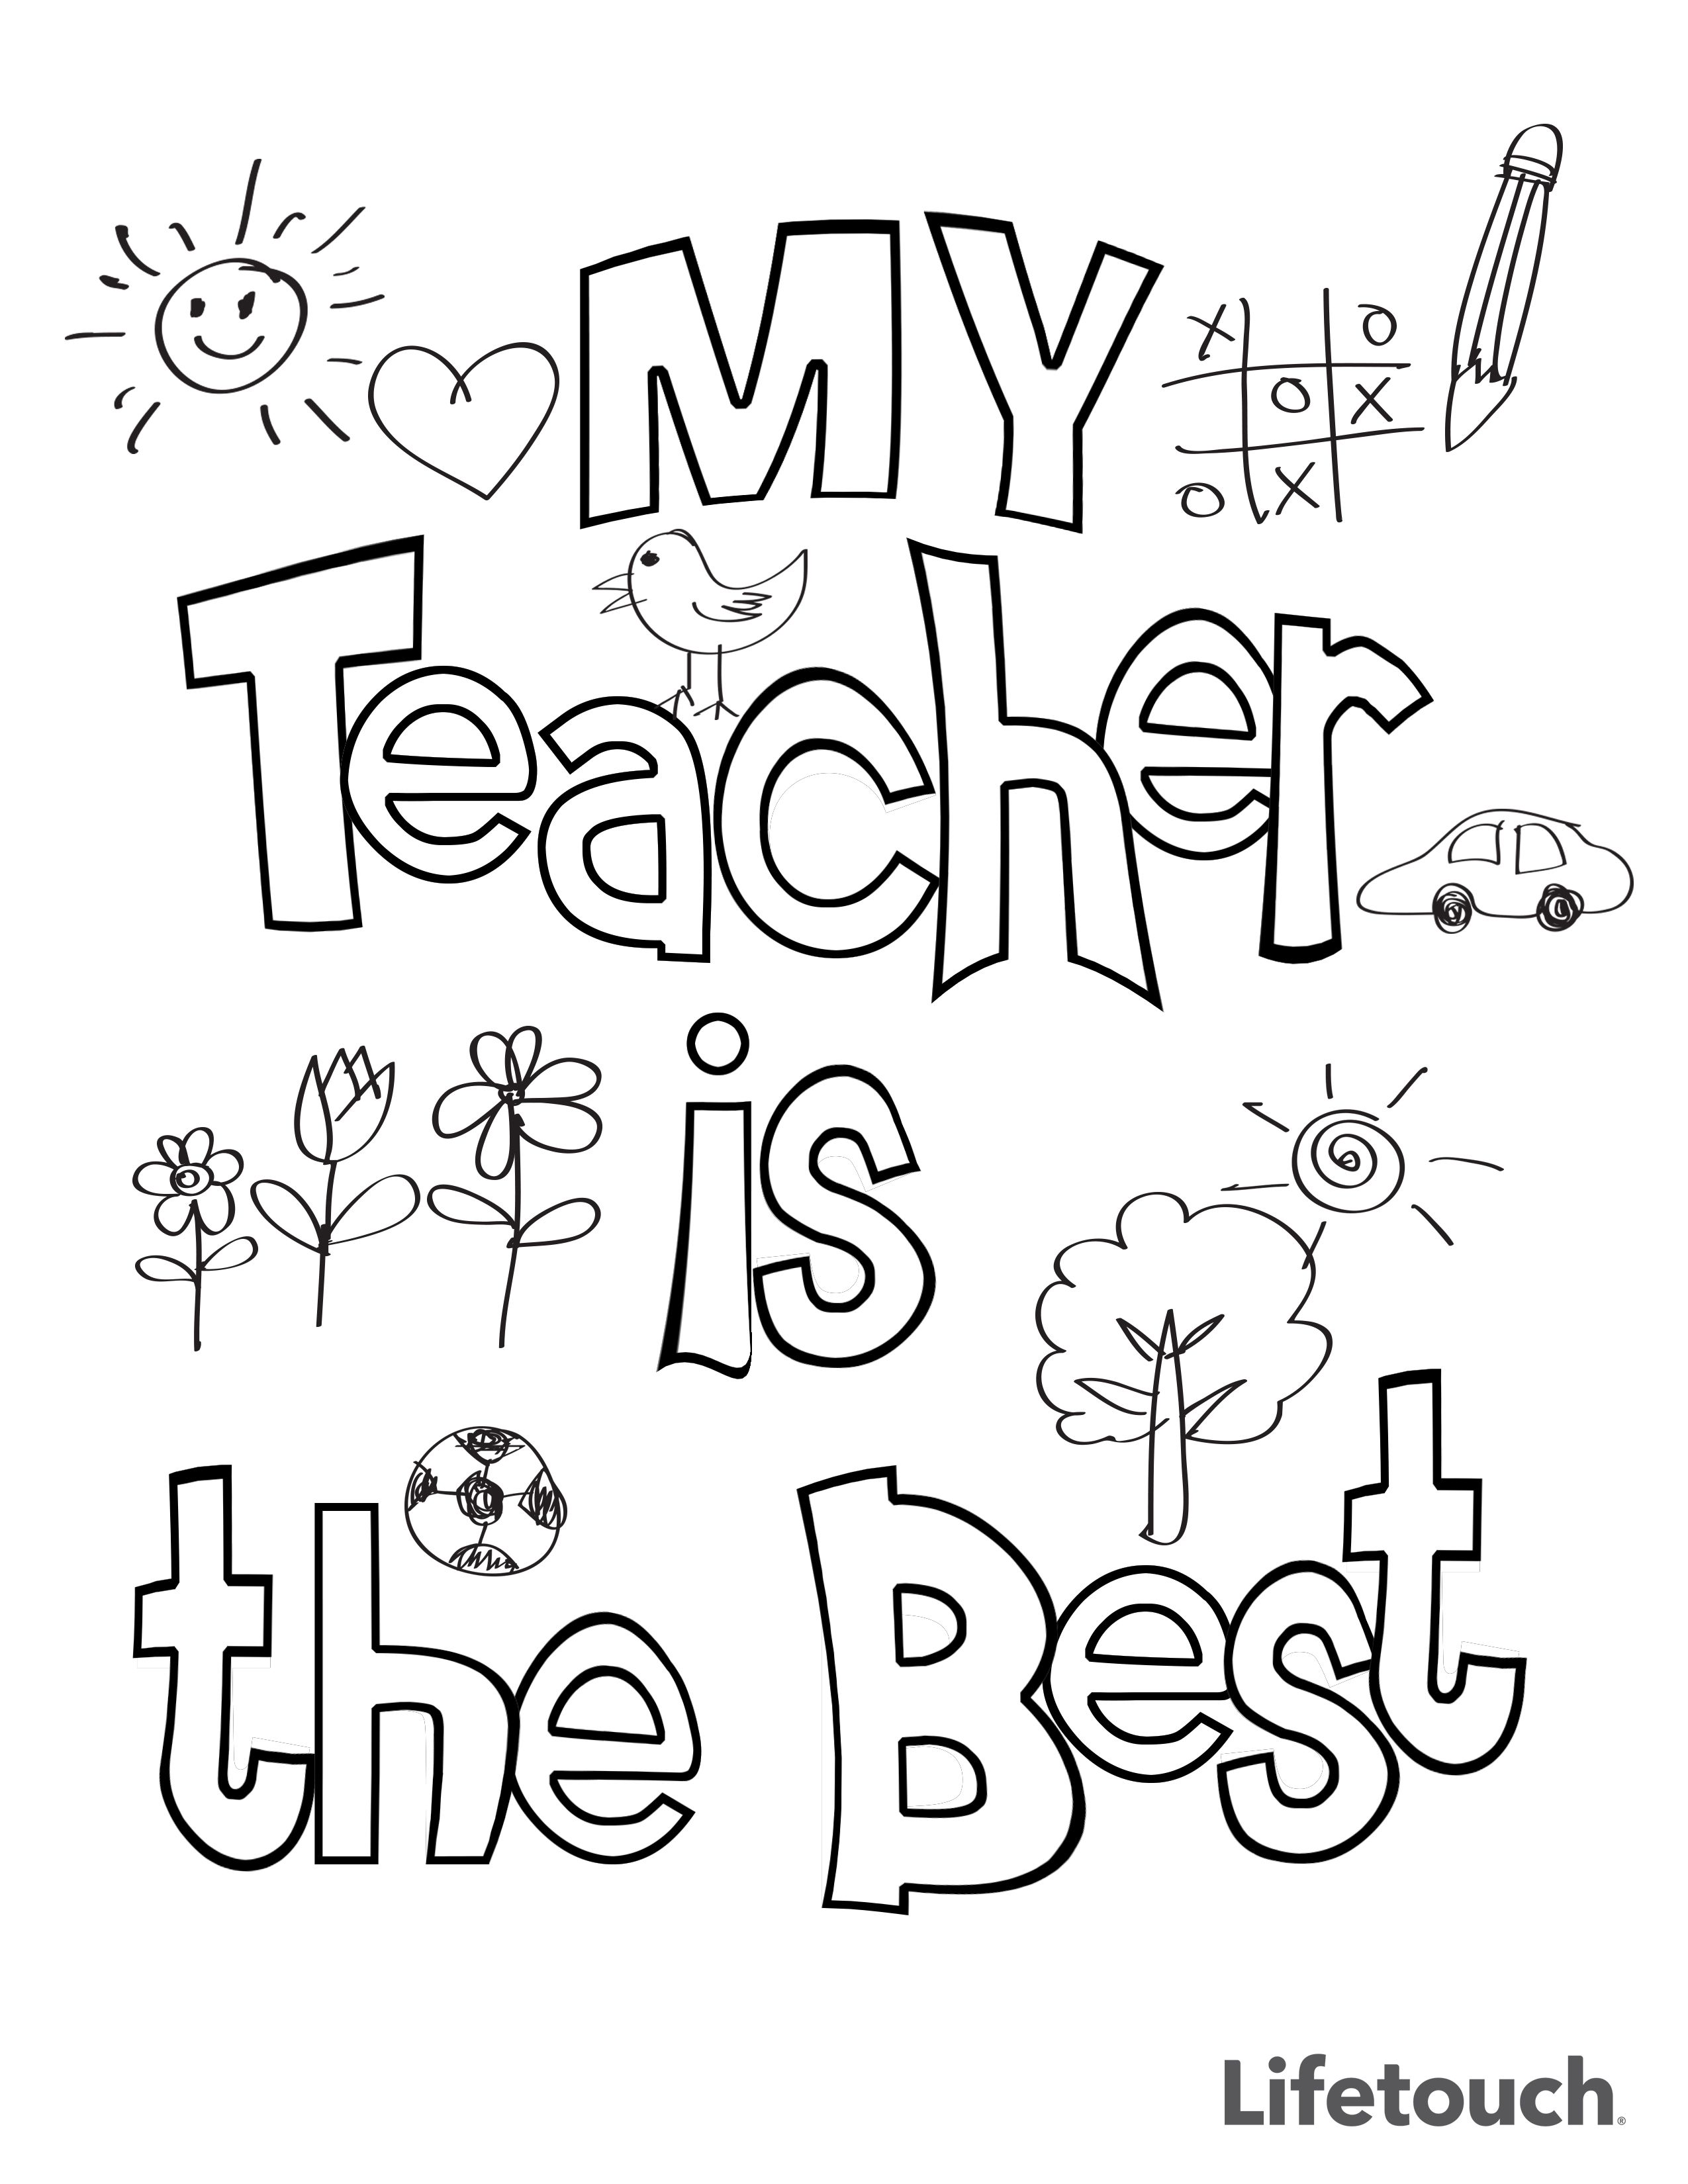 Teacher Appreciation Coloring Sheet | Teacher appreciation week printables,  Teacher appreciation printables, Teachers appreciation week gifts